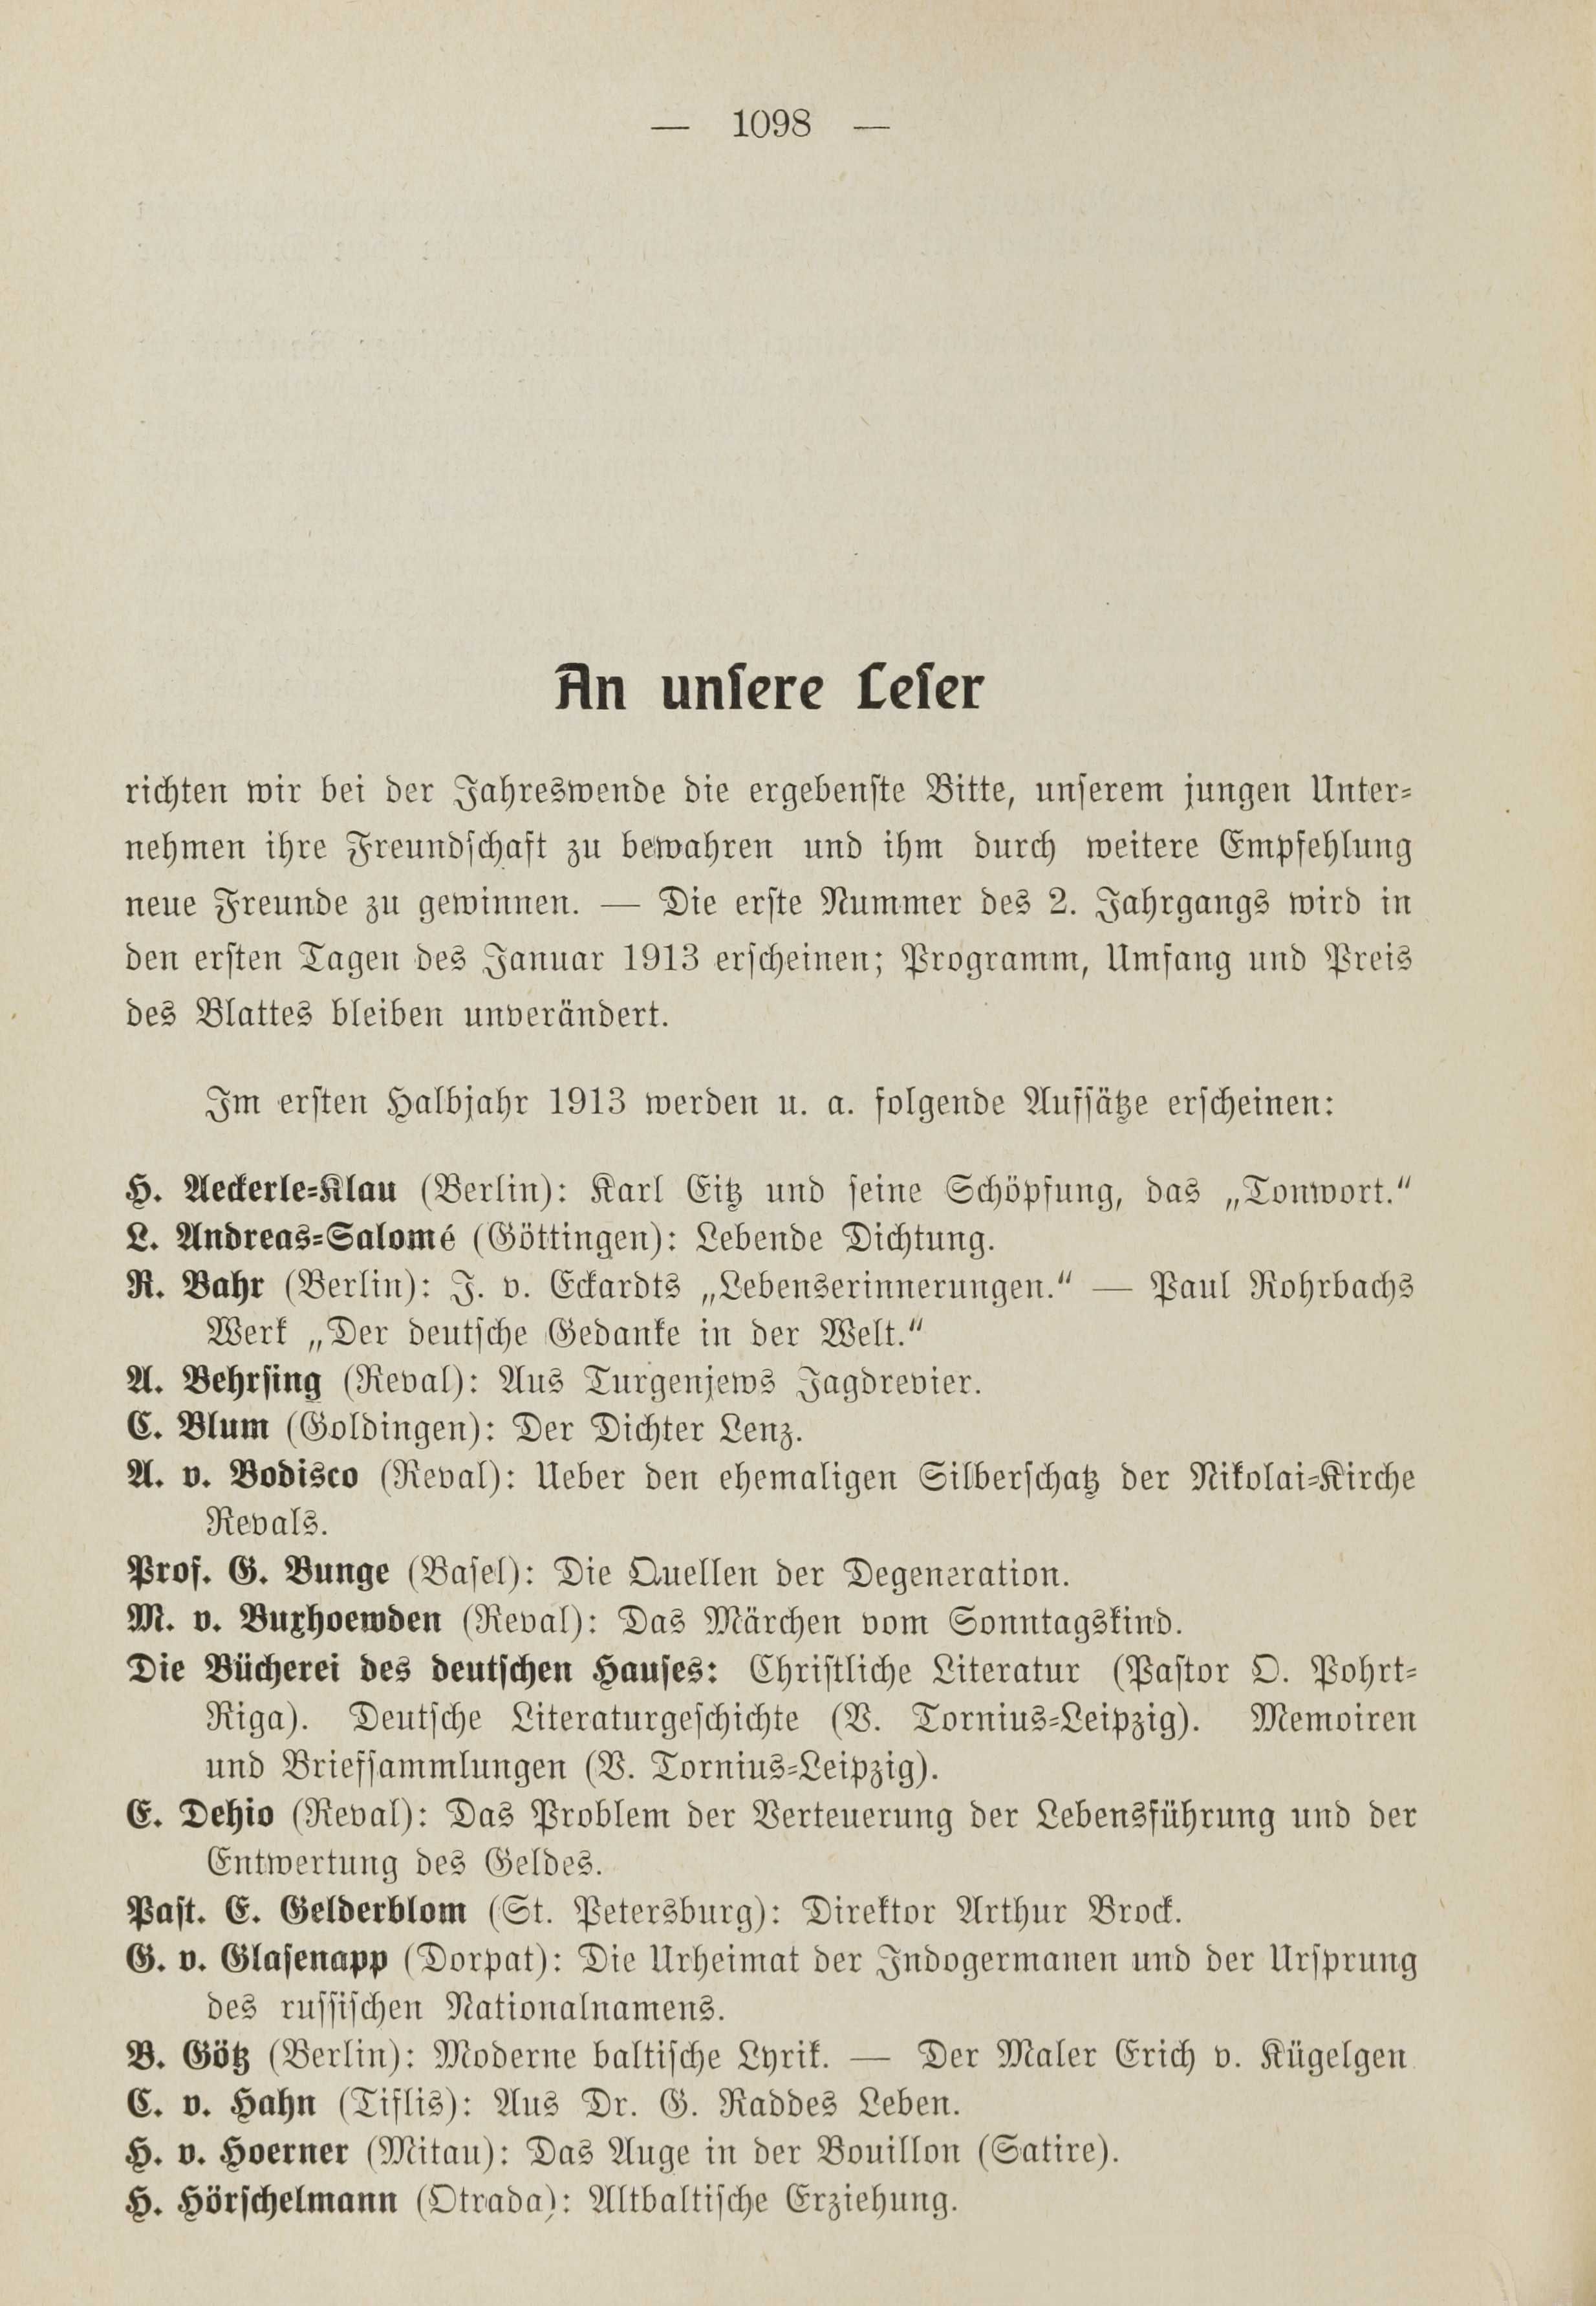 Deutsche Monatsschrift für Russland [1] (1912) | 1106. (1098) Основной текст